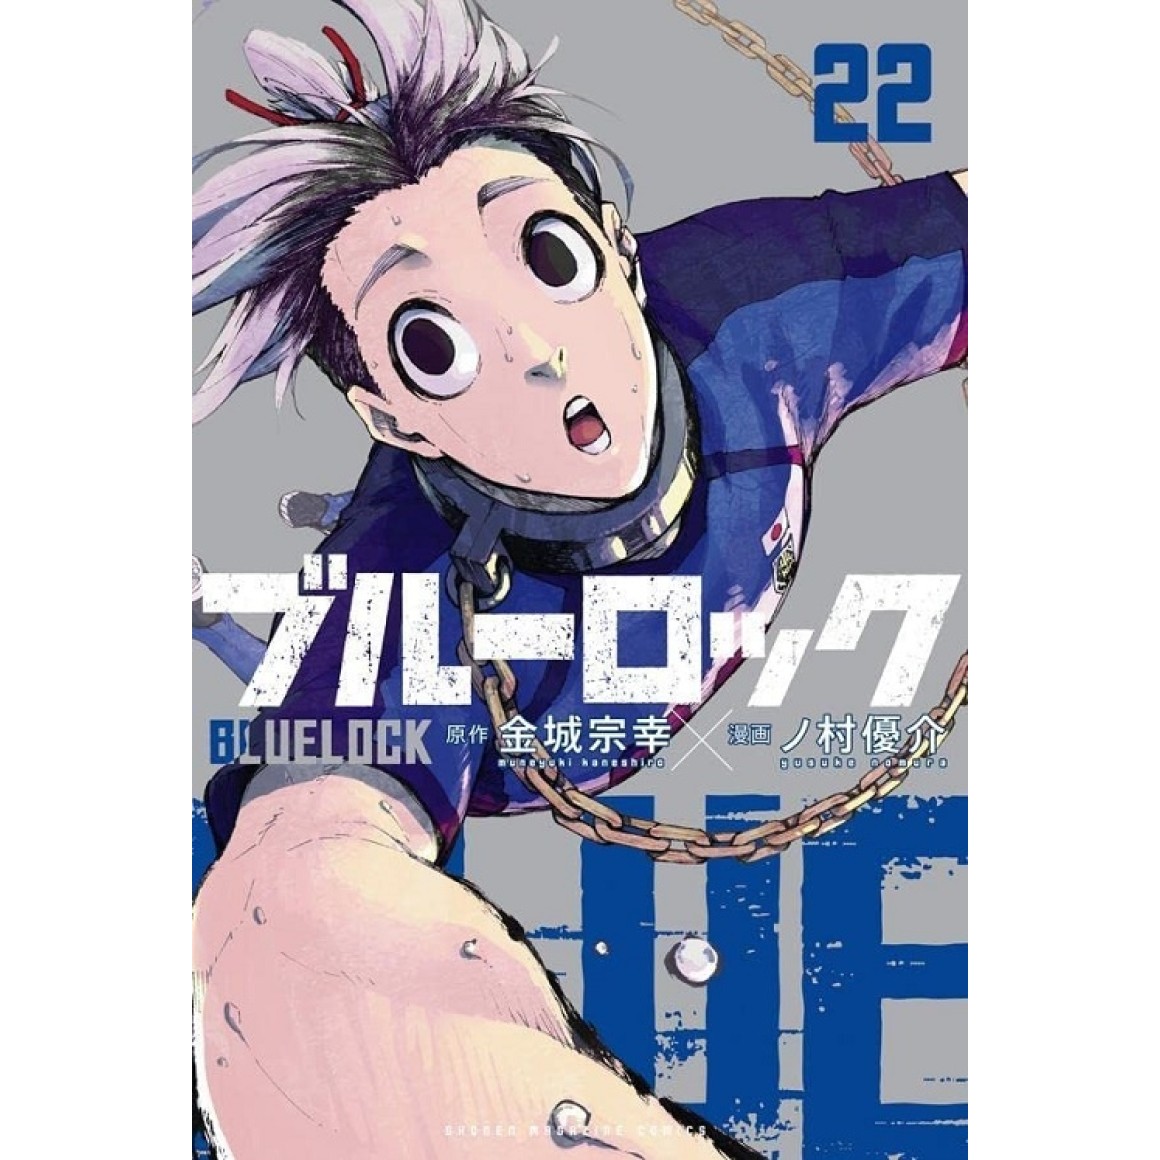 BLUE LOCK vol. 6 - Edição Japonesa